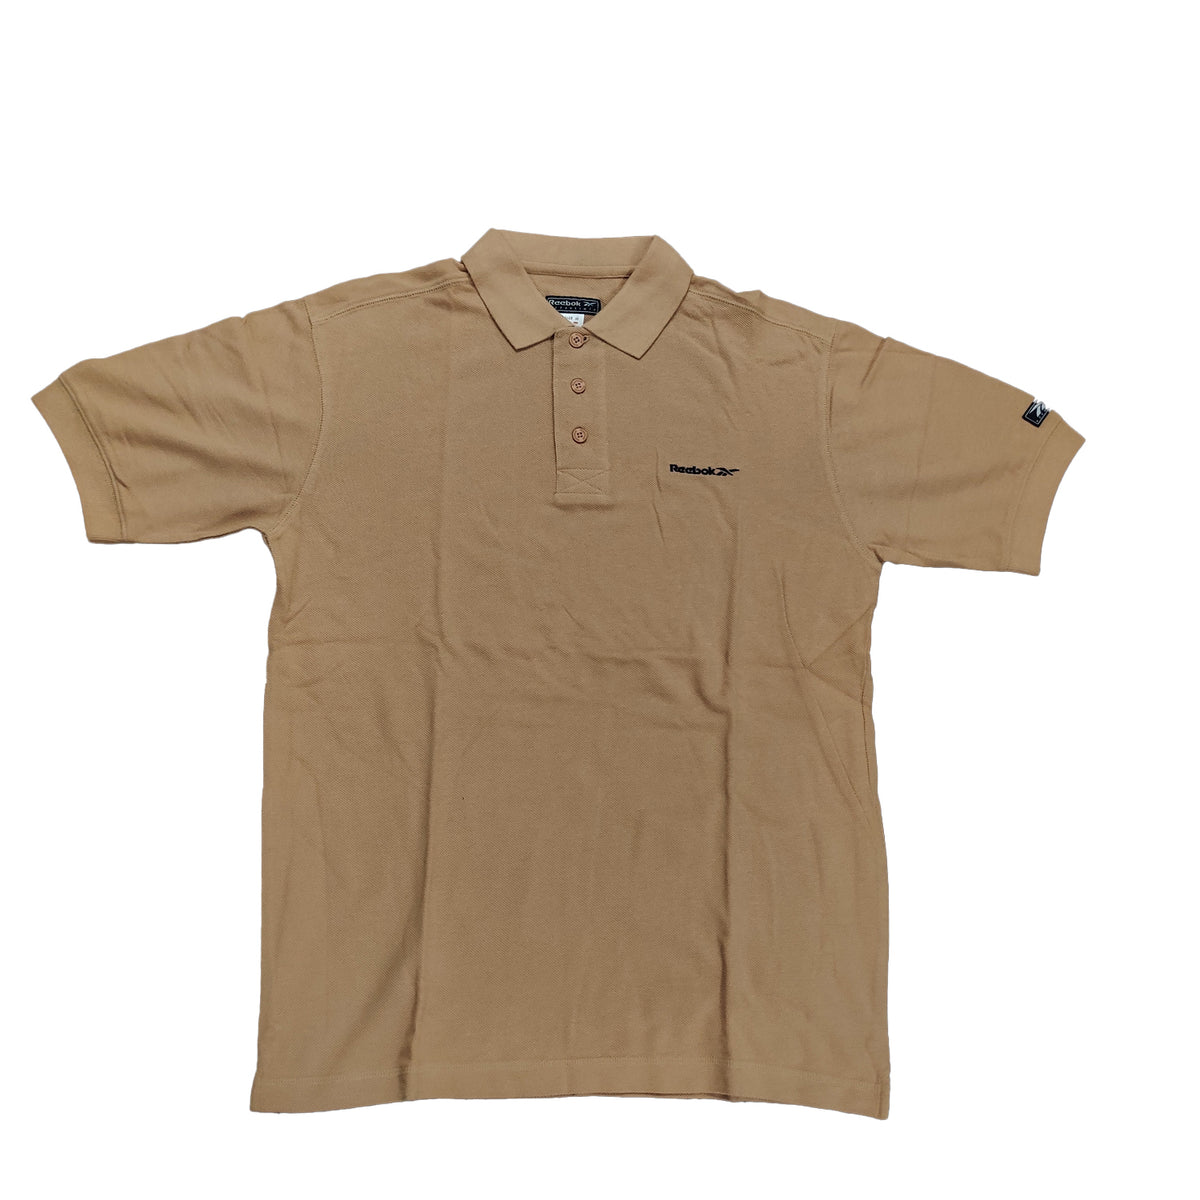 Reebok Mens Clearance Plain Brown Polo Shirt - Medium